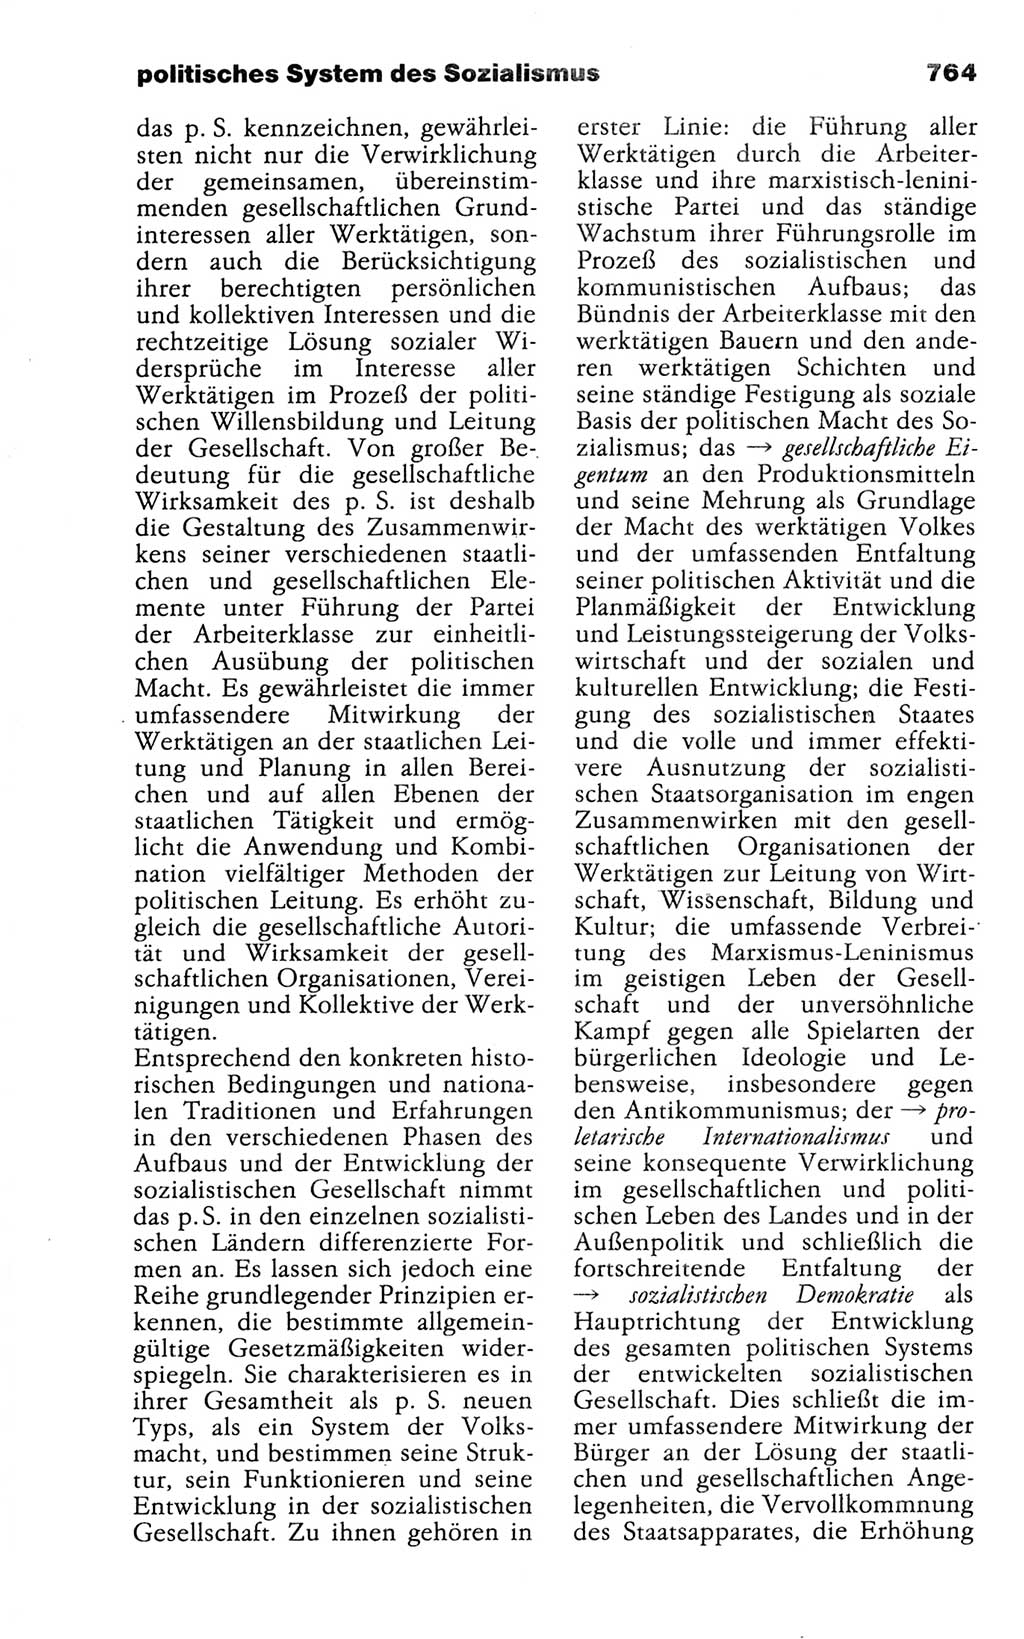 Kleines politisches Wörterbuch [Deutsche Demokratische Republik (DDR)] 1988, Seite 764 (Kl. pol. Wb. DDR 1988, S. 764)